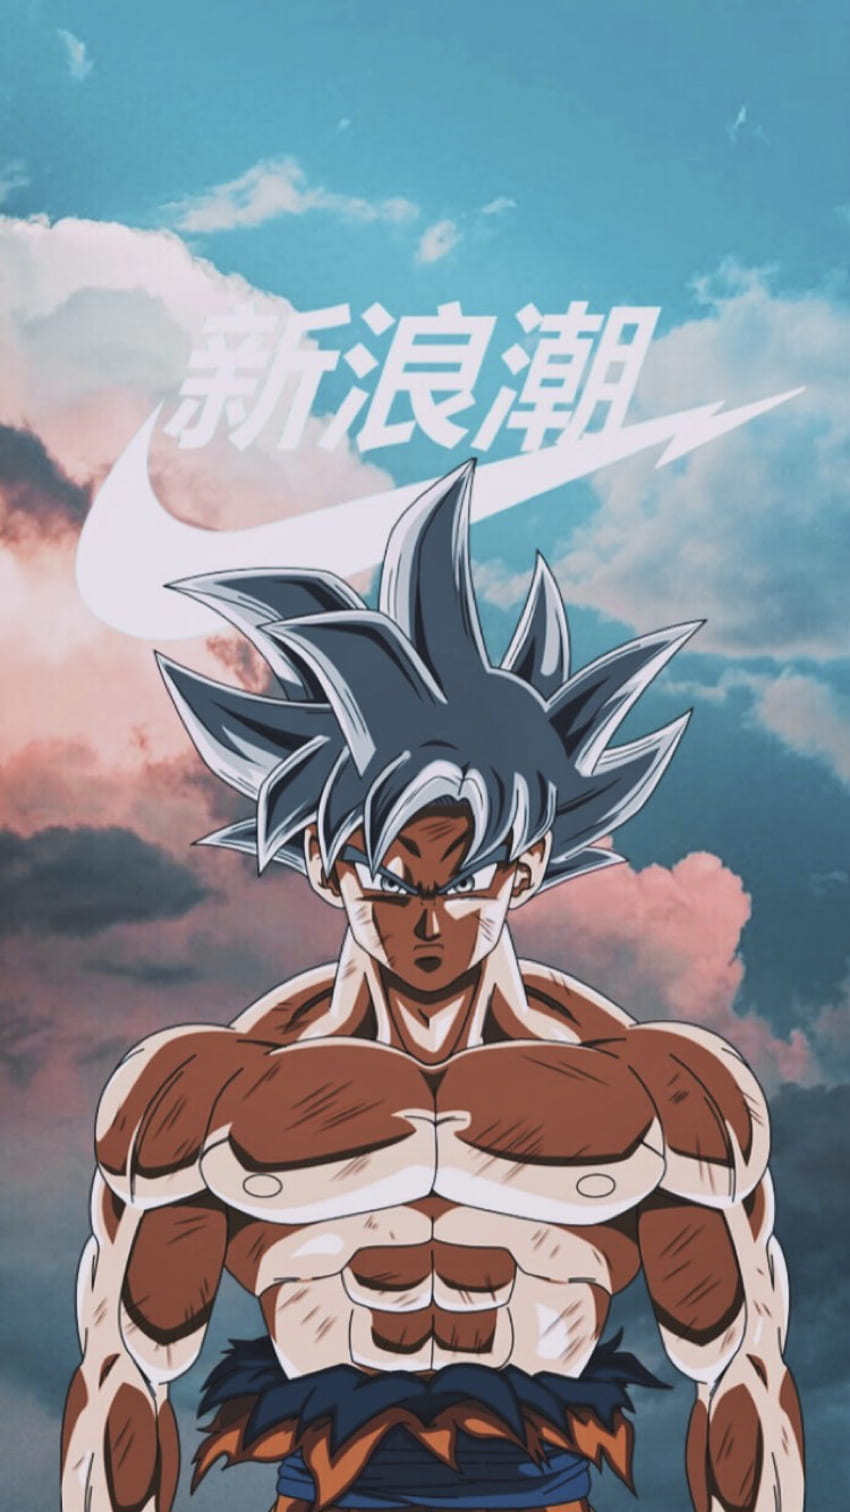 Goku - nhân vật huyền thoại trong series manga nổi tiếng Dragon Ball. Cùng khám phá những hình ảnh đầy năng lượng của anh chàng chiến binh này để được nhìn thấy sức mạnh phi thường!